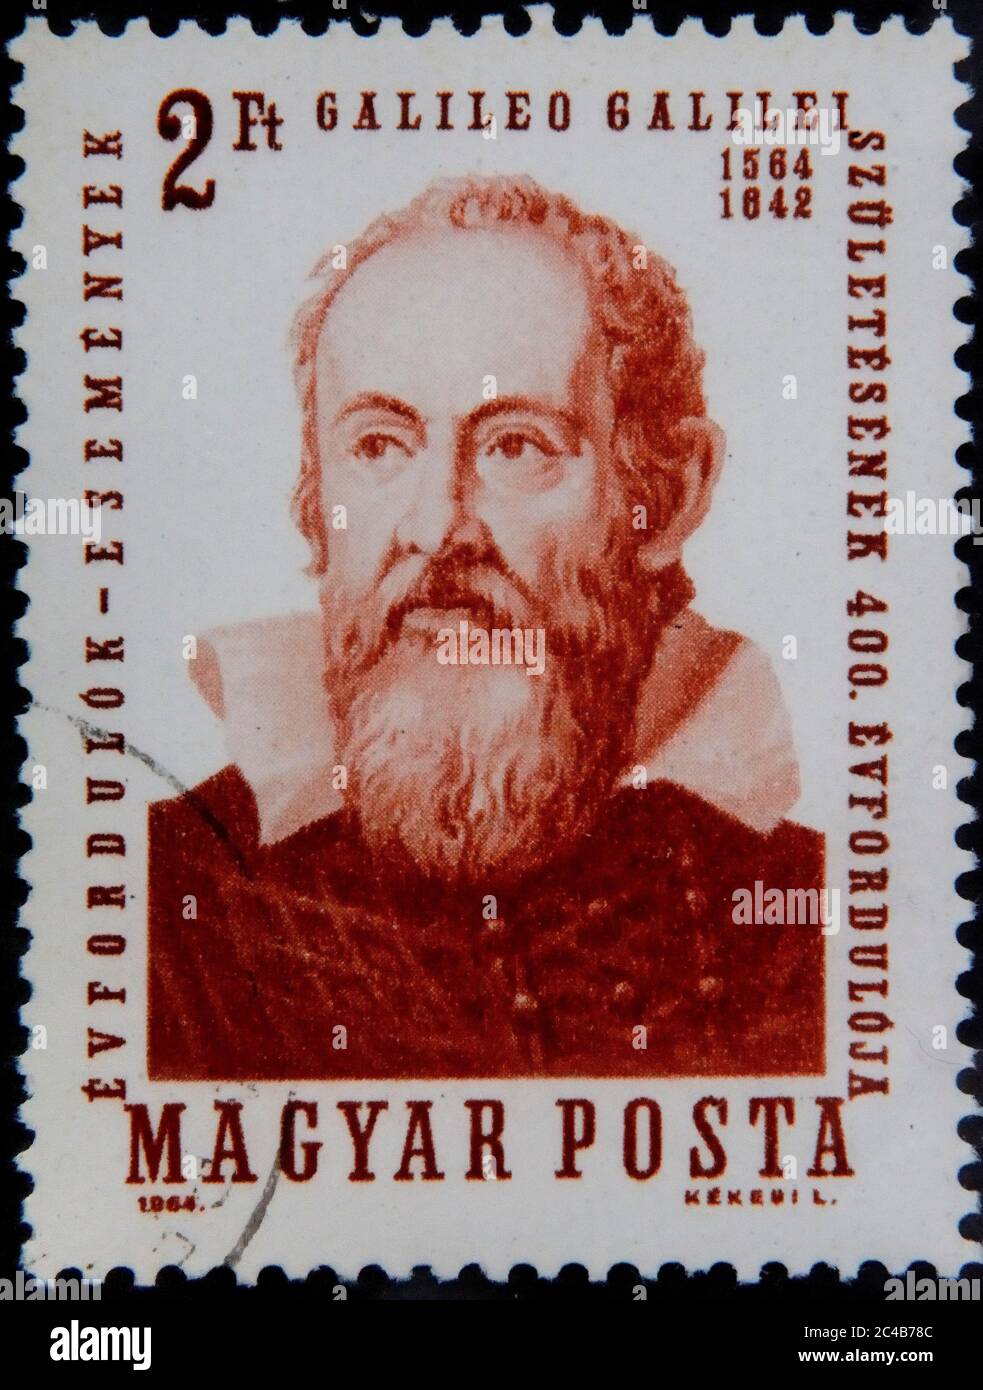 Galileo Galilei, 1564-1642, astronomo, matematico, fisico, filosofo e professore italiano, ritratto sul francobollo ungherese, Ungheria Foto Stock